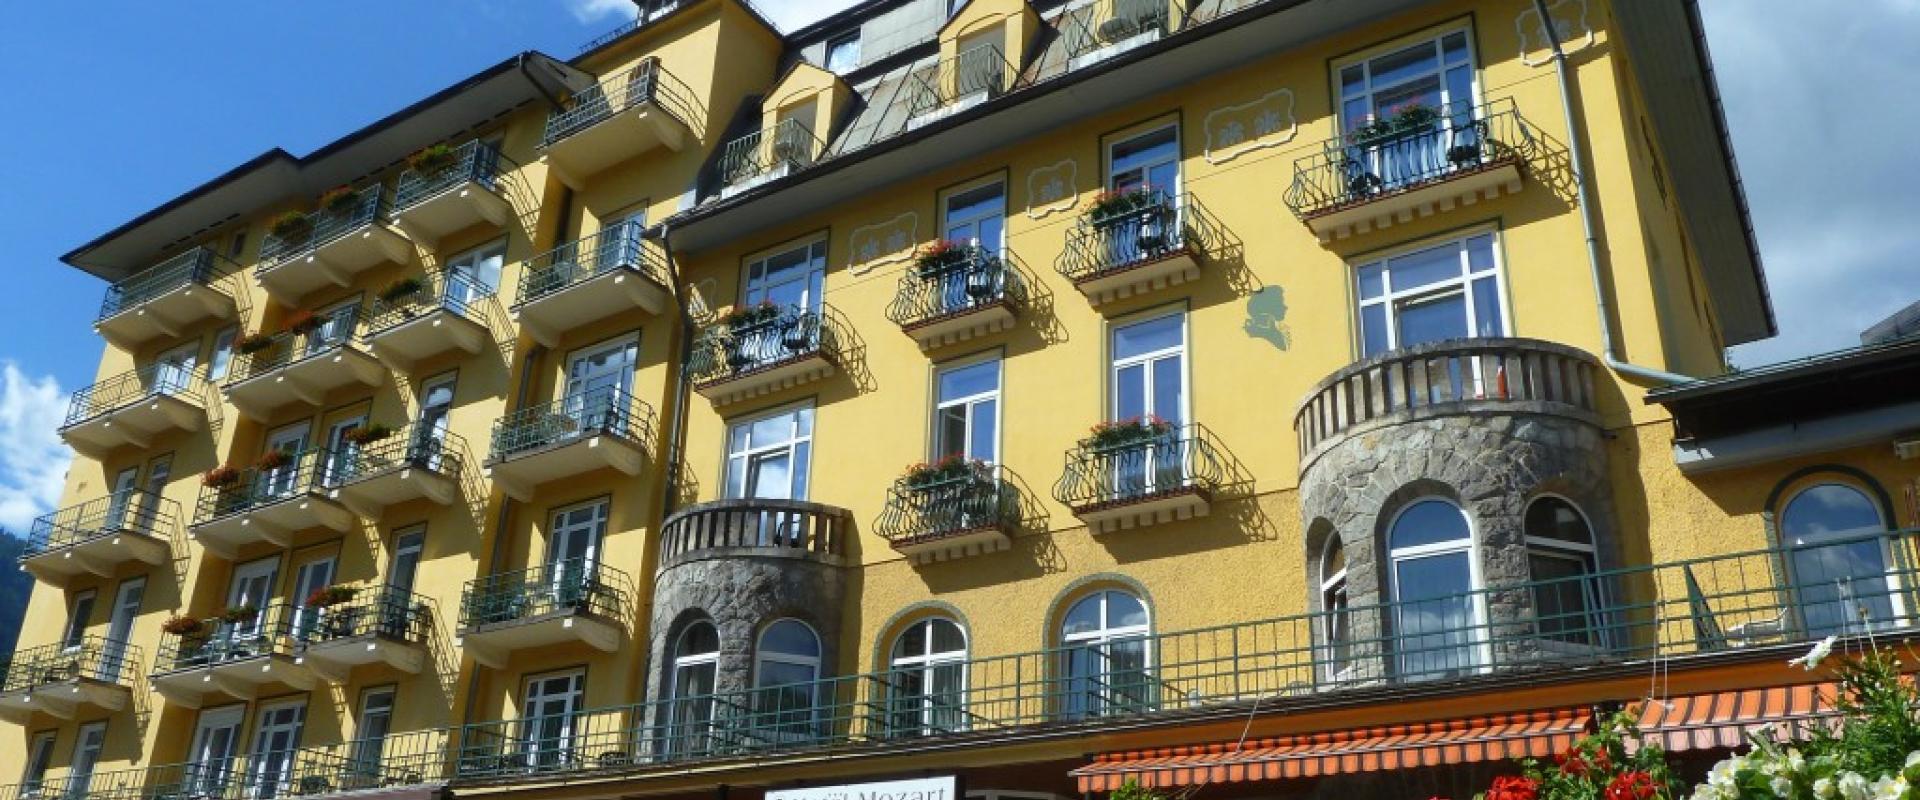 21881 Motorrad Hotel Mozart im Salzburger Land.jpg